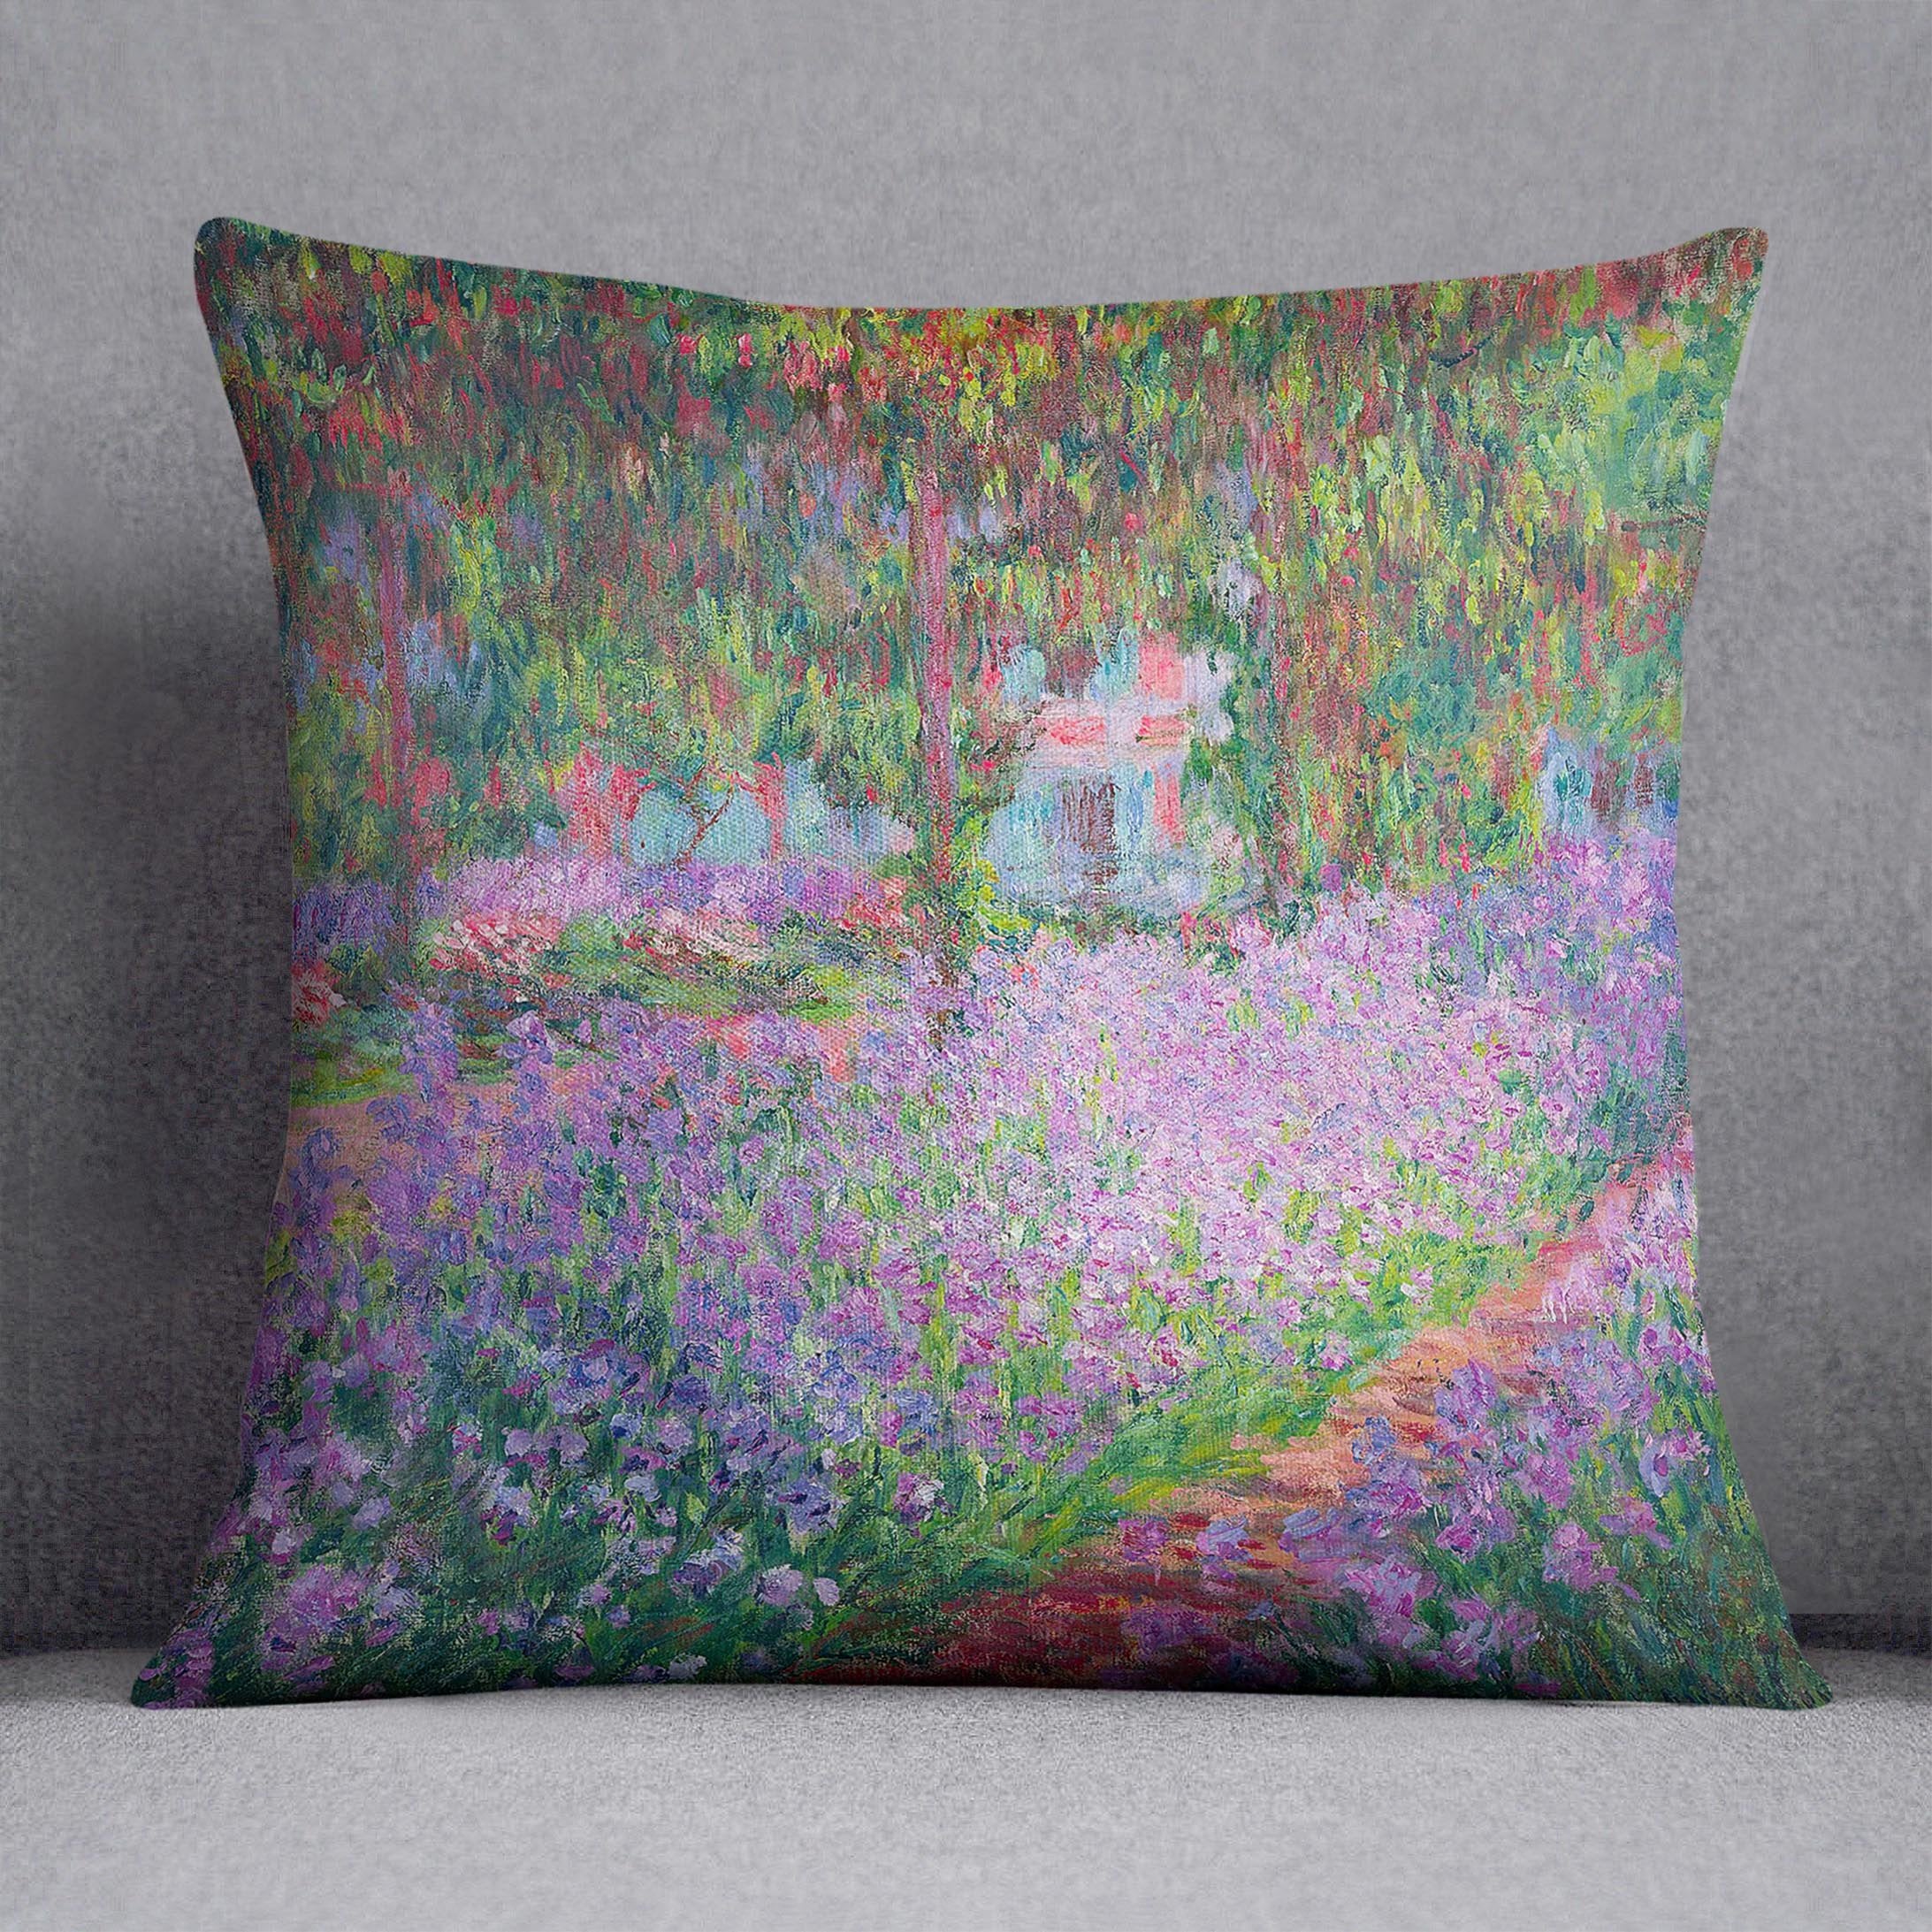 Artists Garden by Monet Throw Pillow